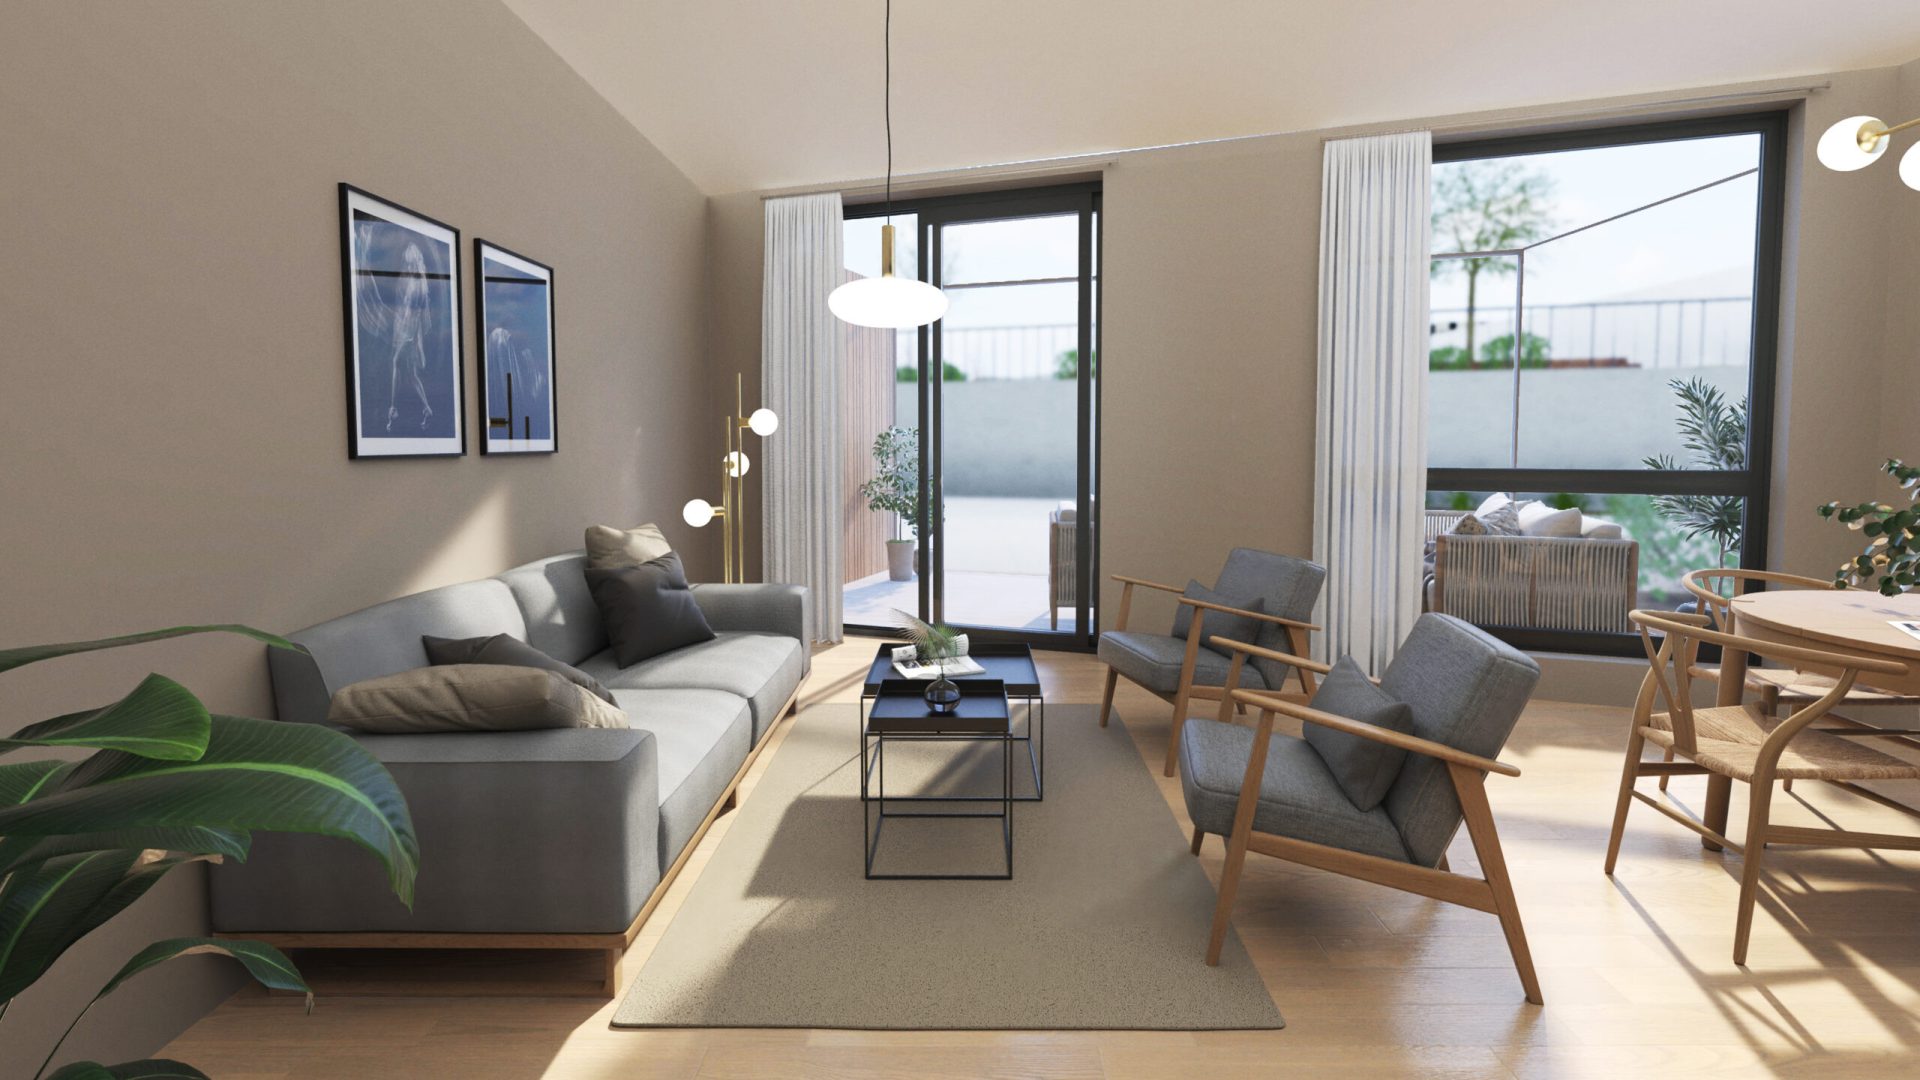 Et eksempel på en høyoppløselig gjengivelse laget av QiSpace av en stue designet for å selge leiligheter raskere.